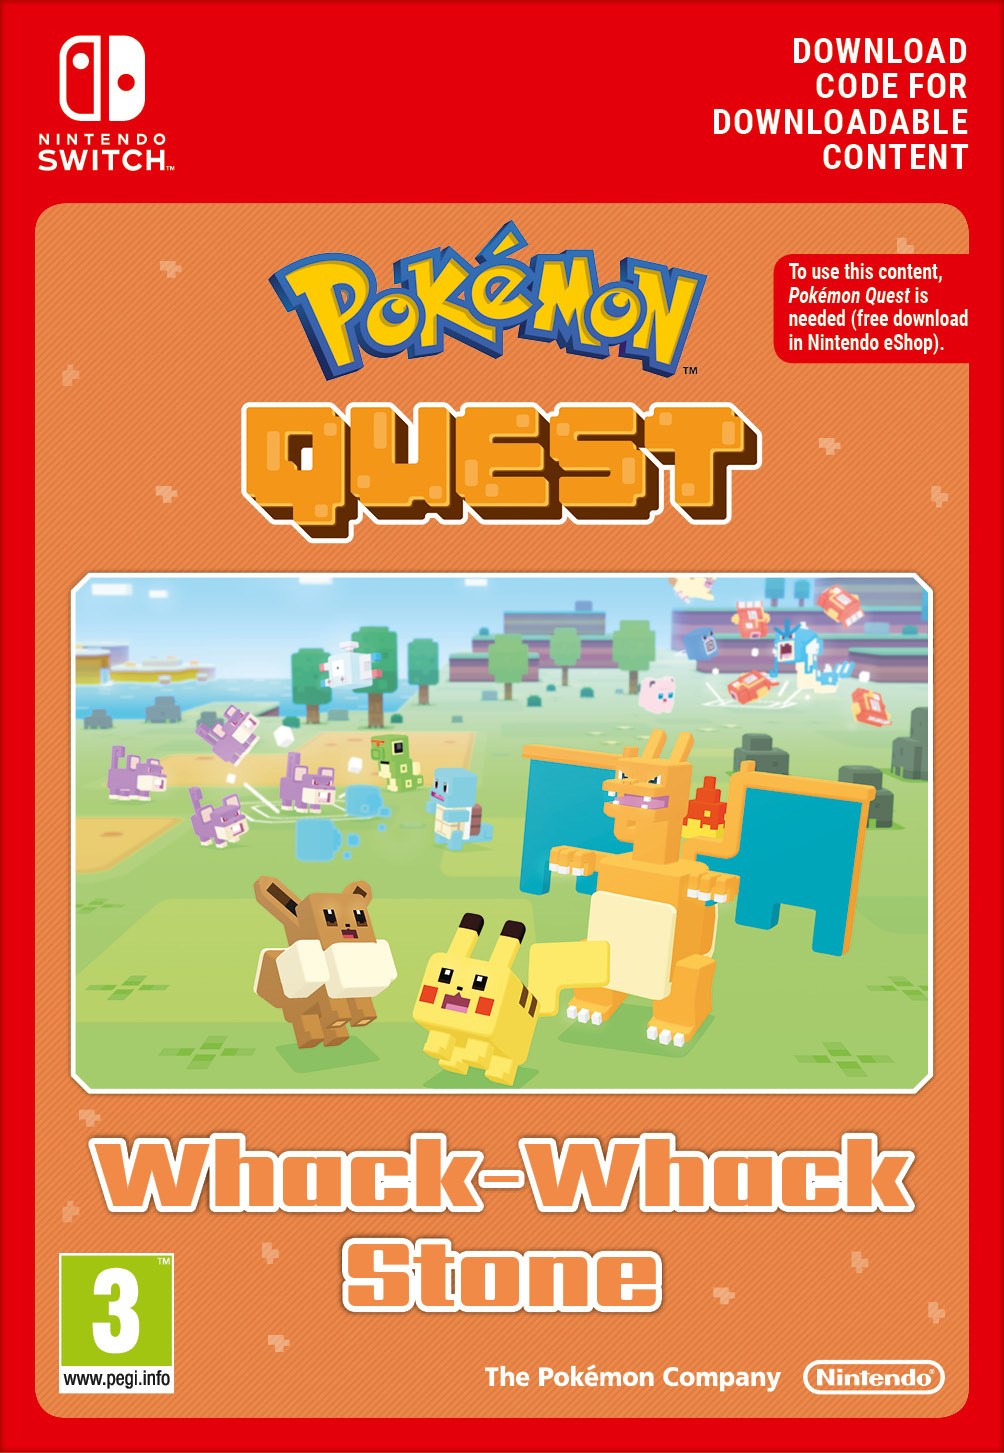 Pokémon™ Quest - Whack-Whack Stone von Nintendo